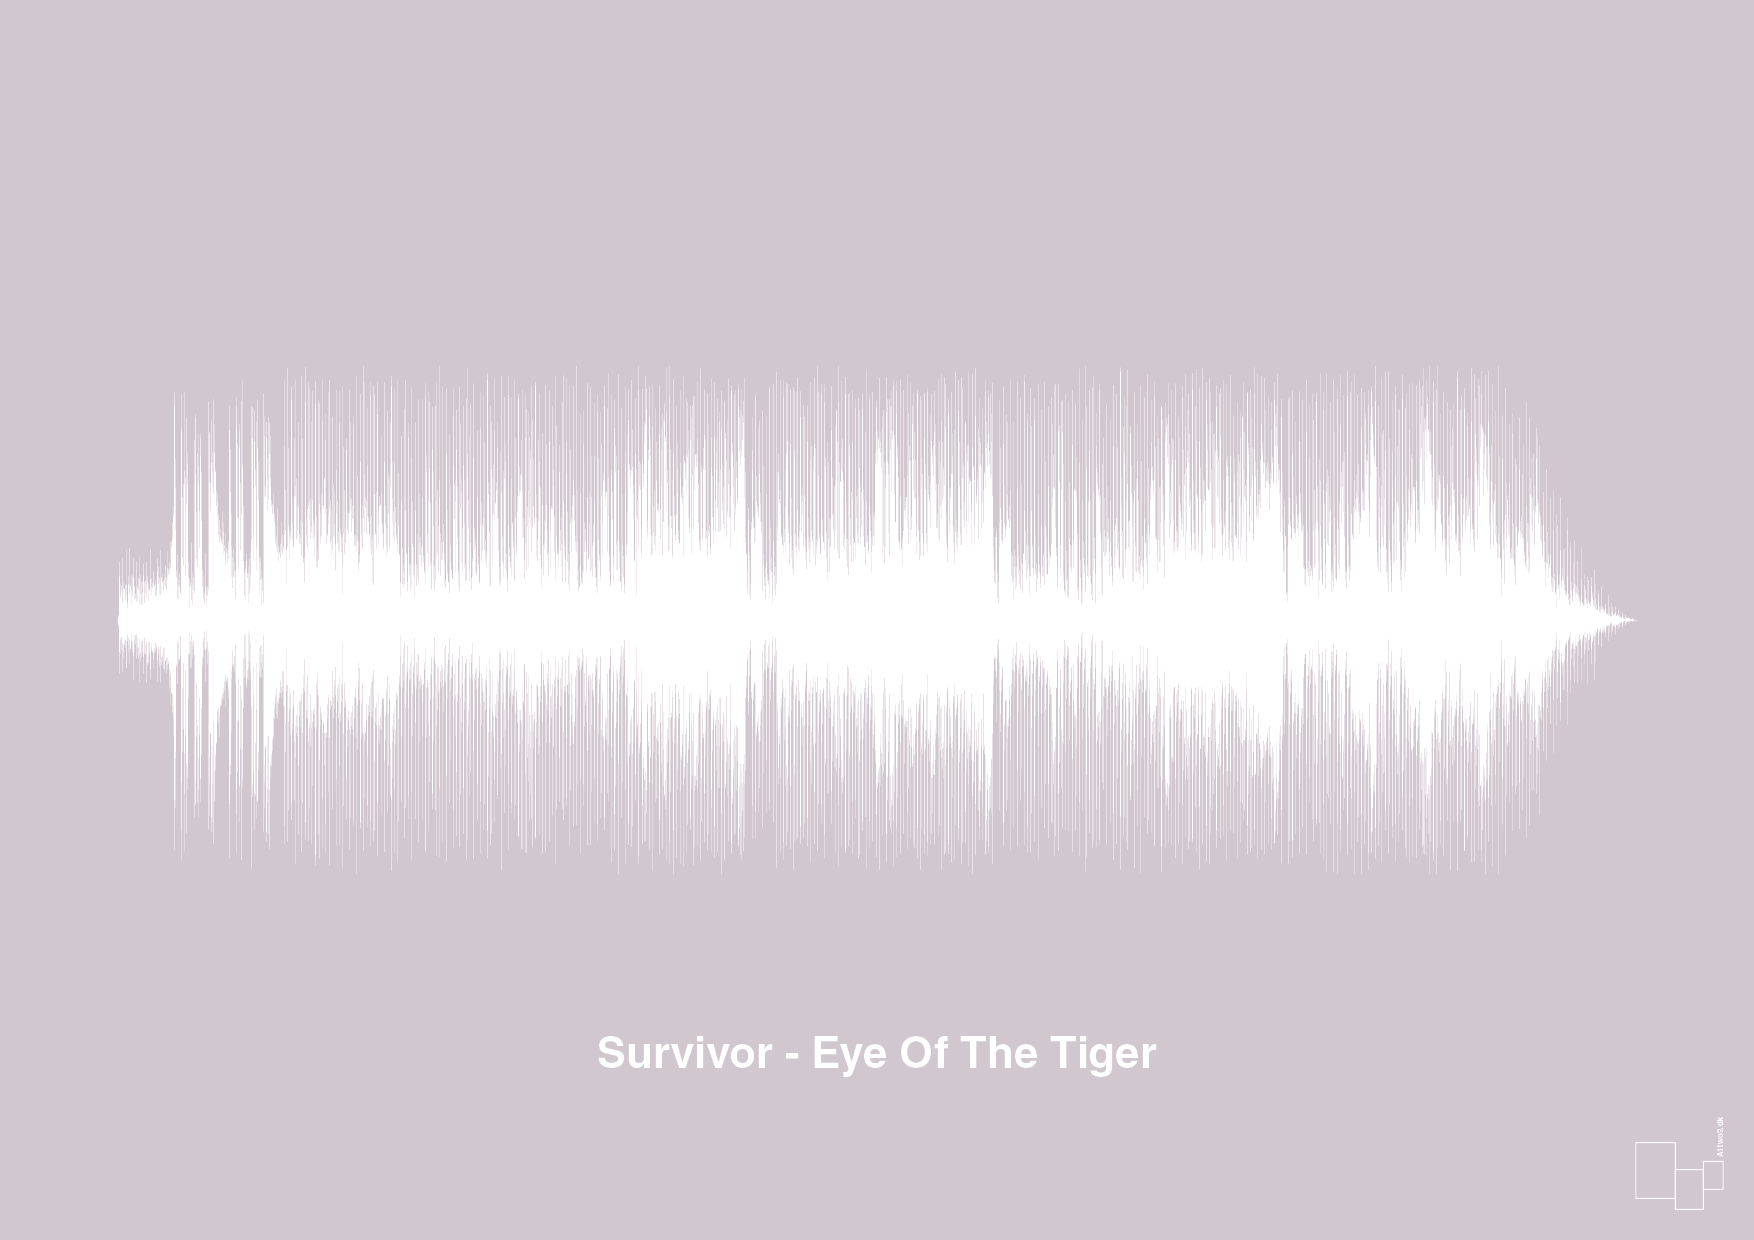 survivor - eye of the tiger - Plakat med Musik i Dusty Lilac